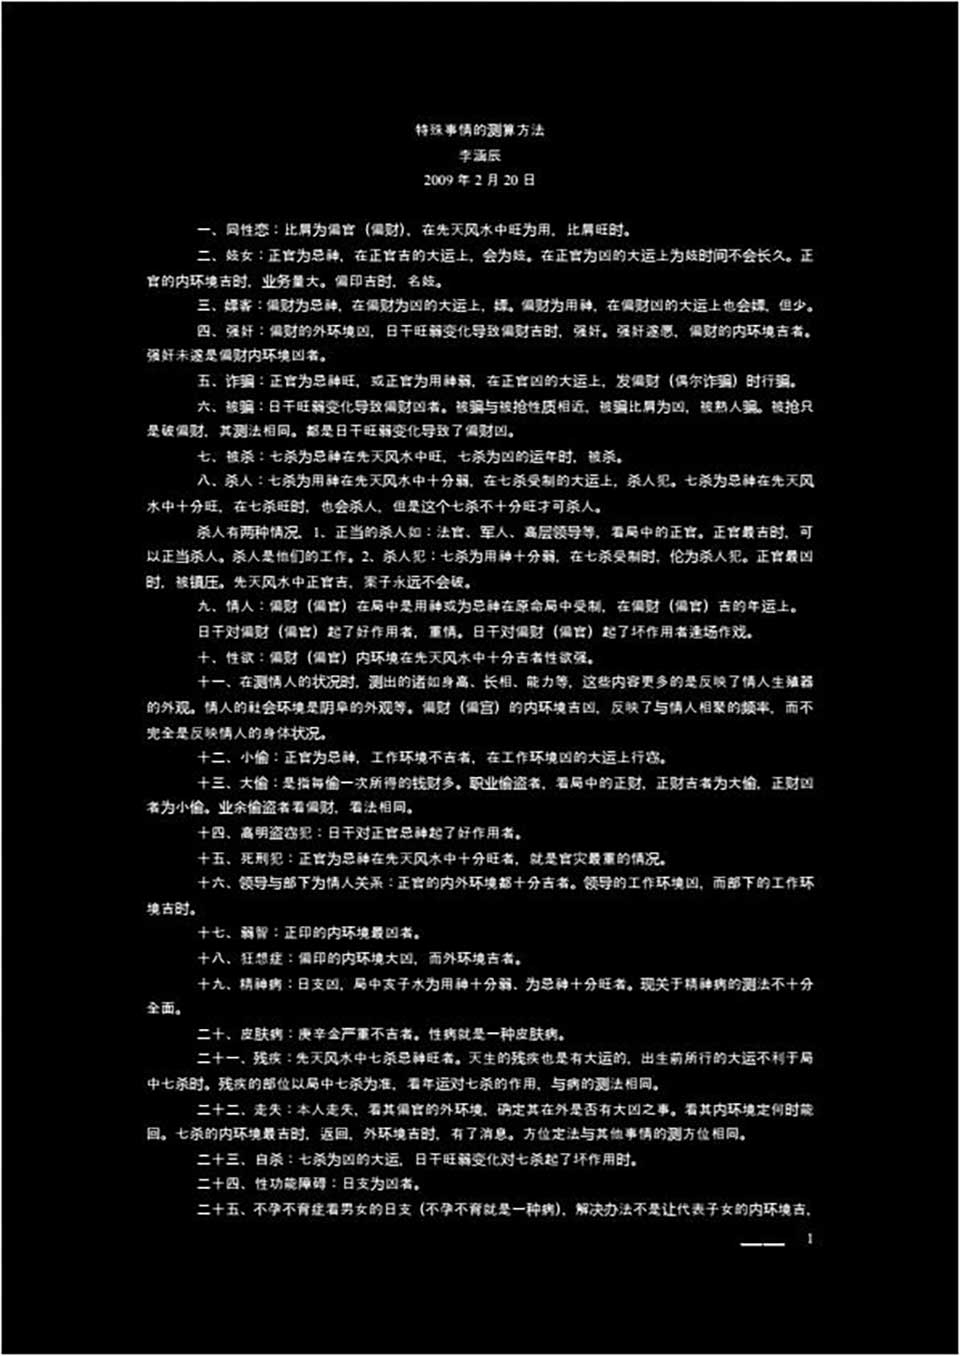 李函辰-20090220特殊事情的测算方法（一校）2页.pdf